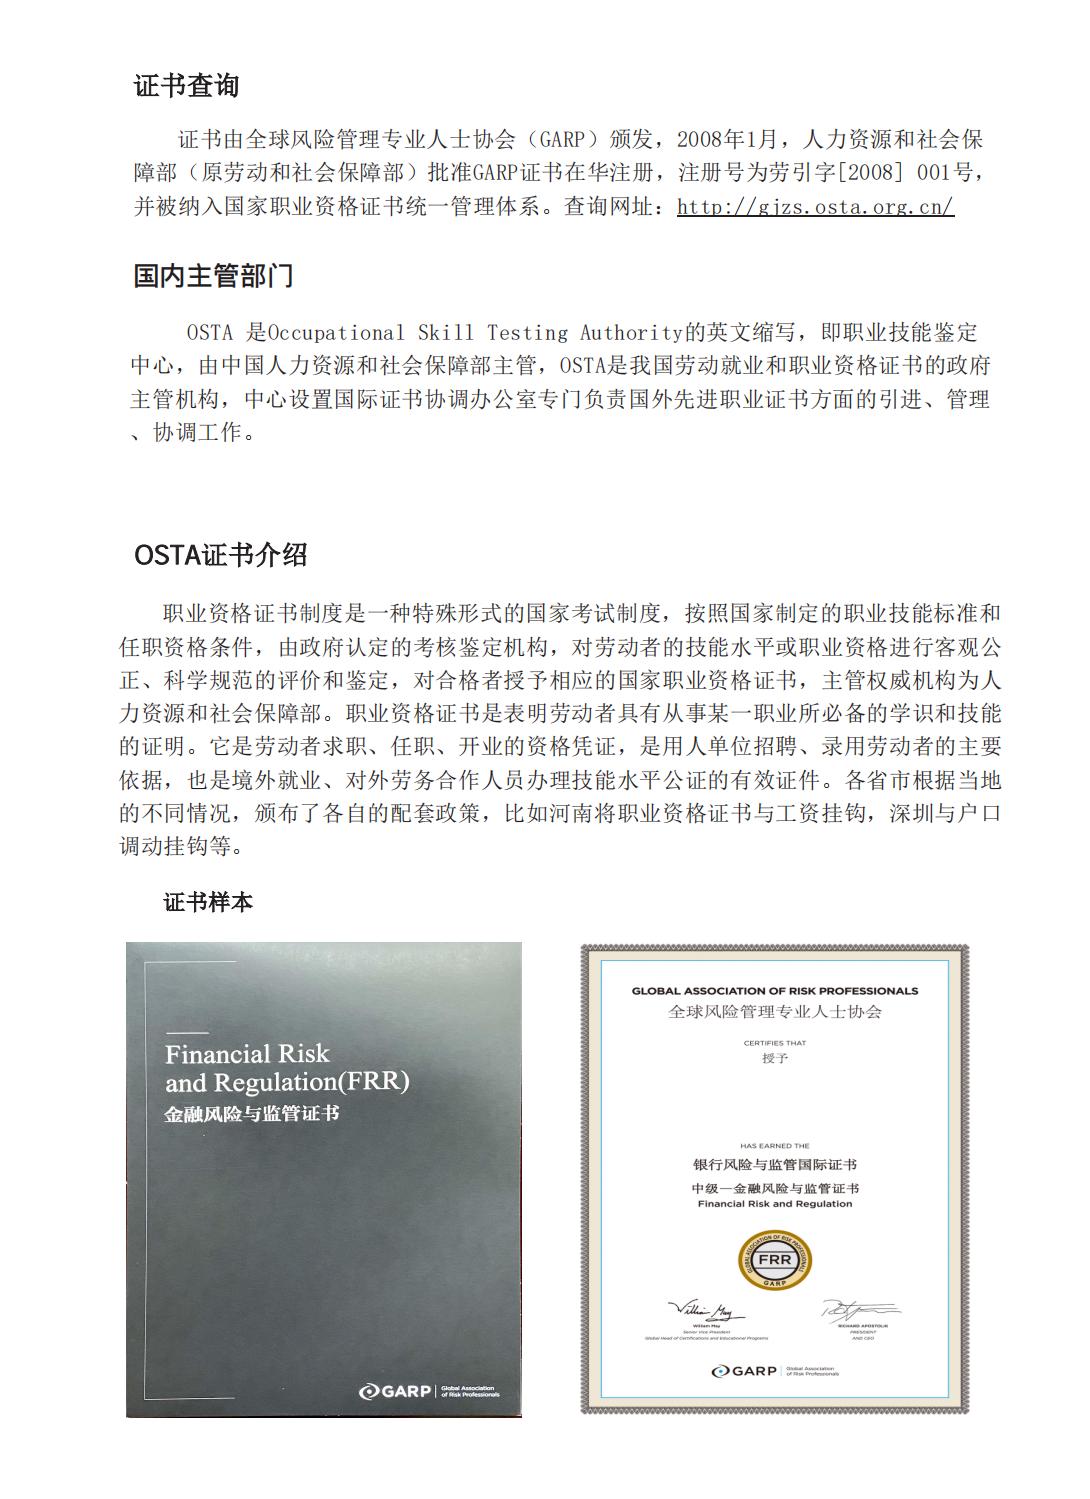 甘肃平凉金融风险与监管证书FRR报名考试培训机构北京启信教育